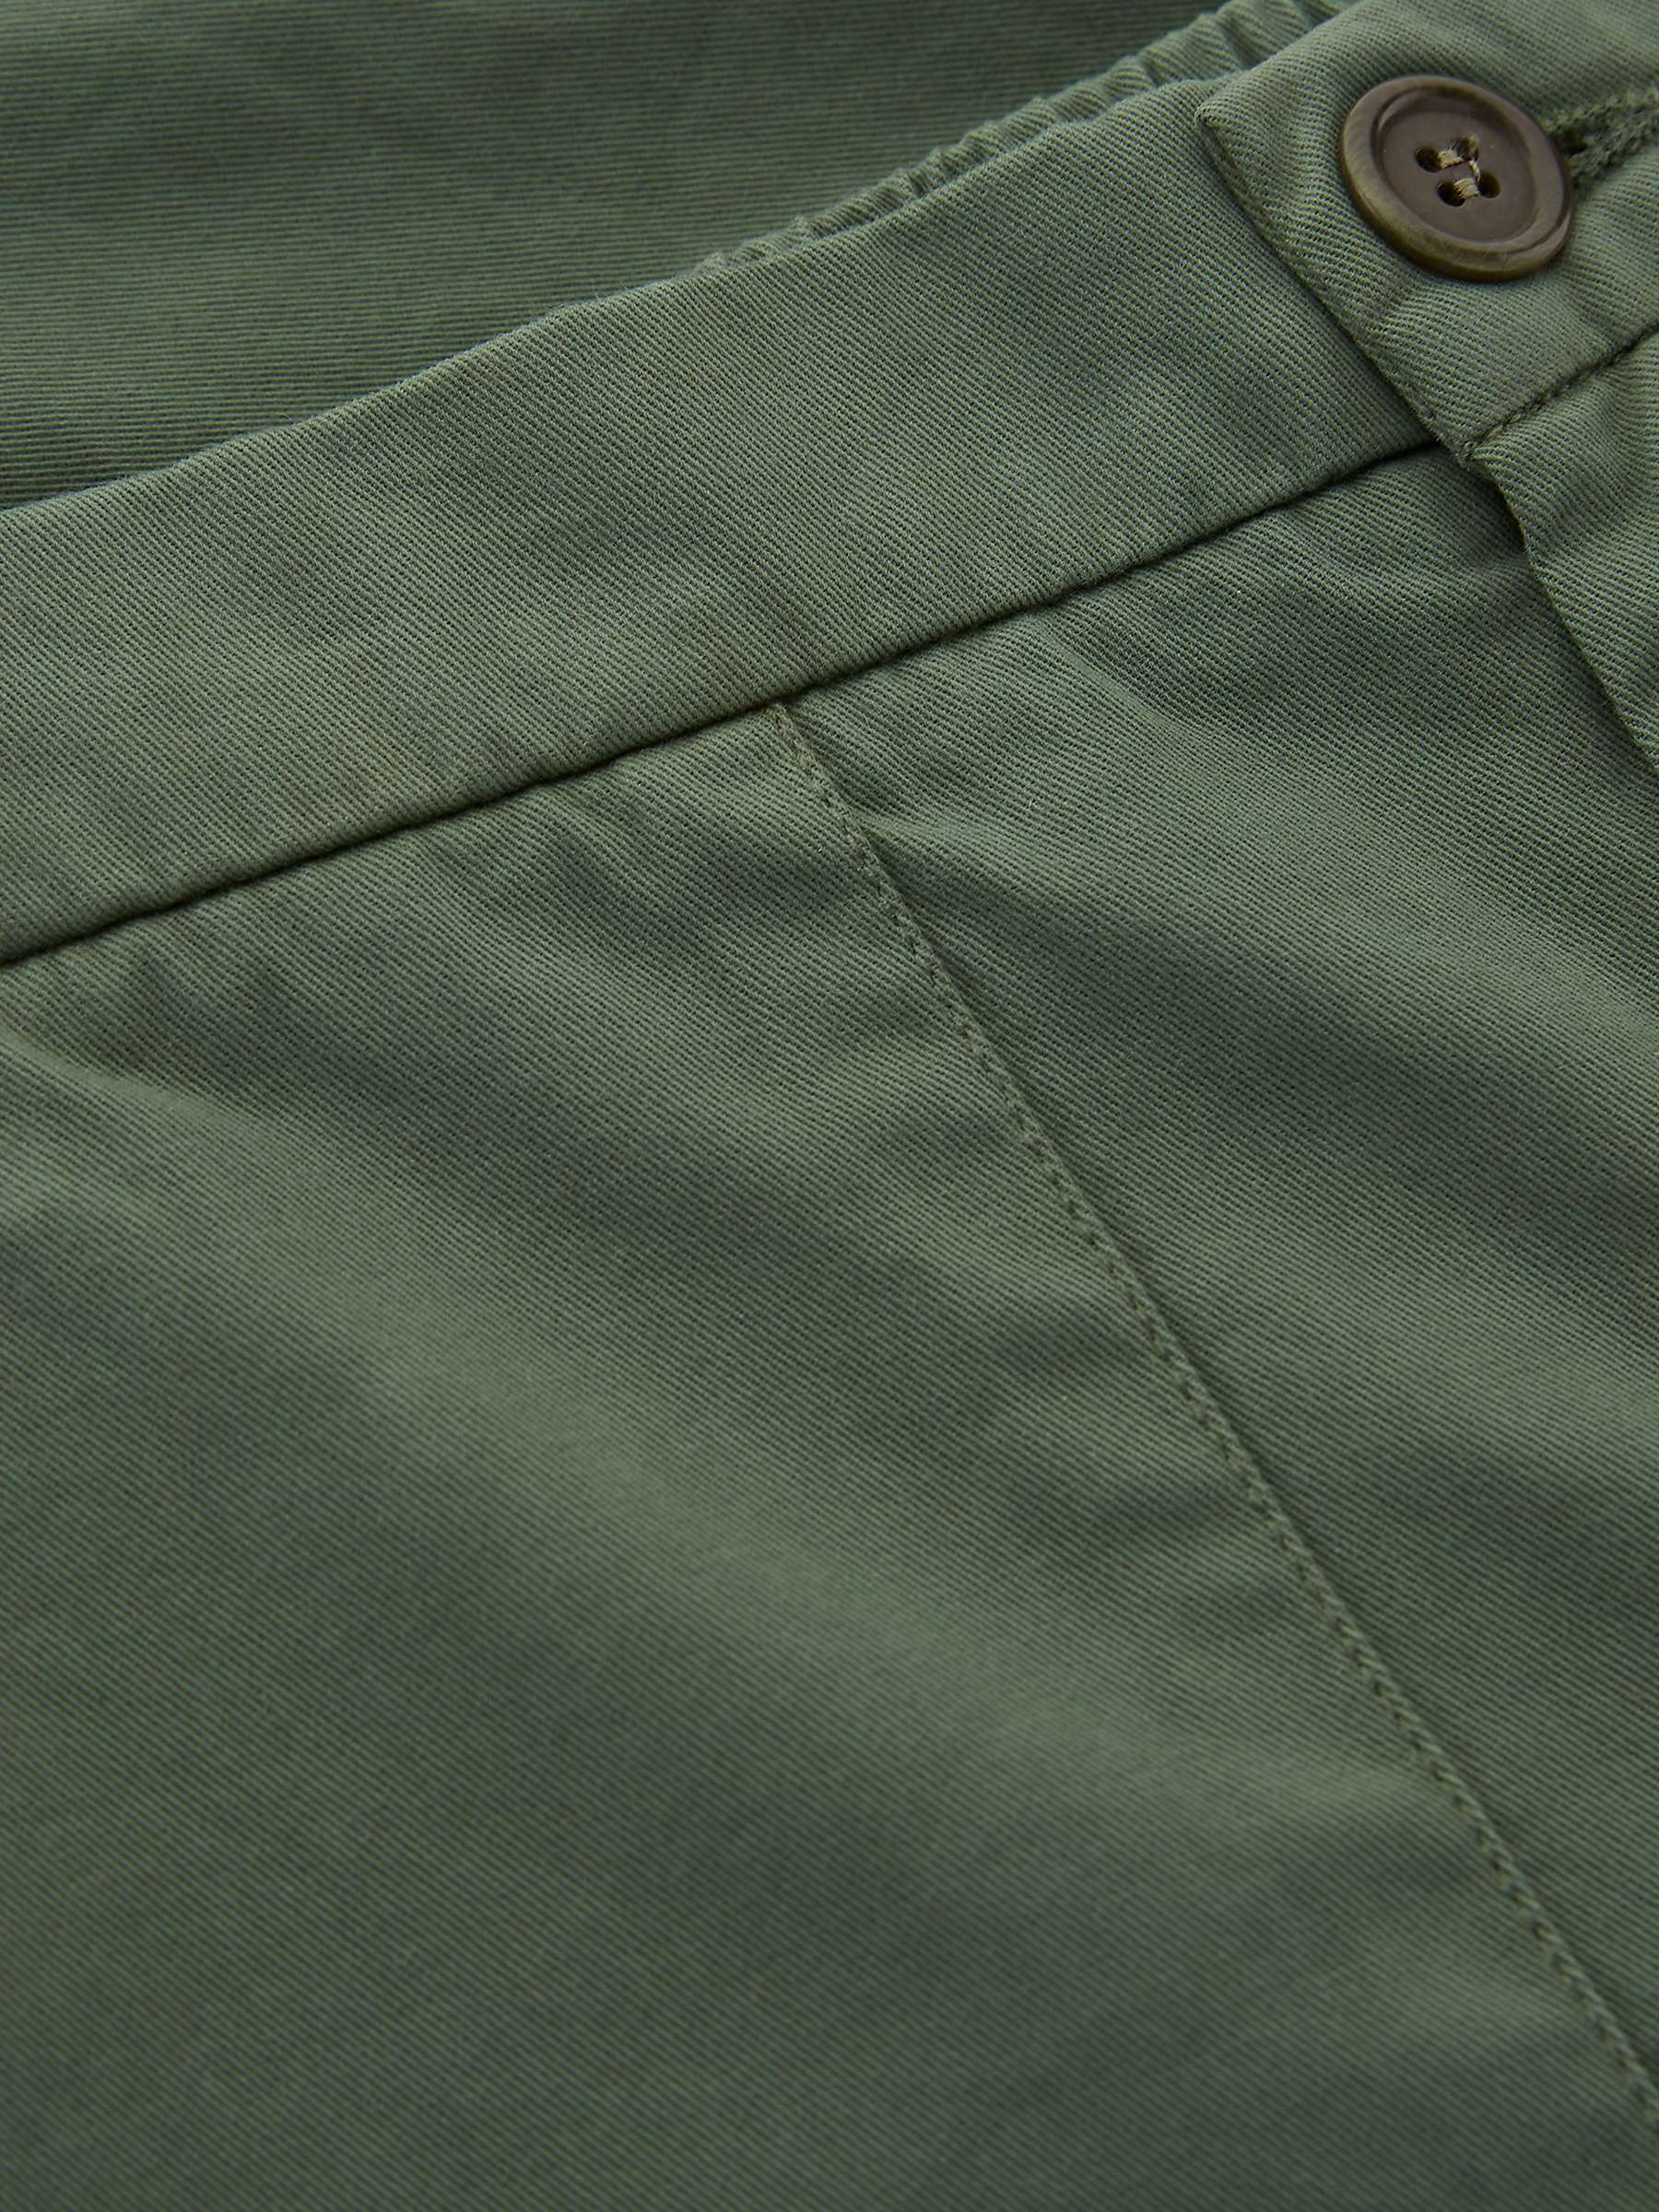 Buy Celtic & Co. Slim Leg Cotton Trousers, Khaki Online at johnlewis.com